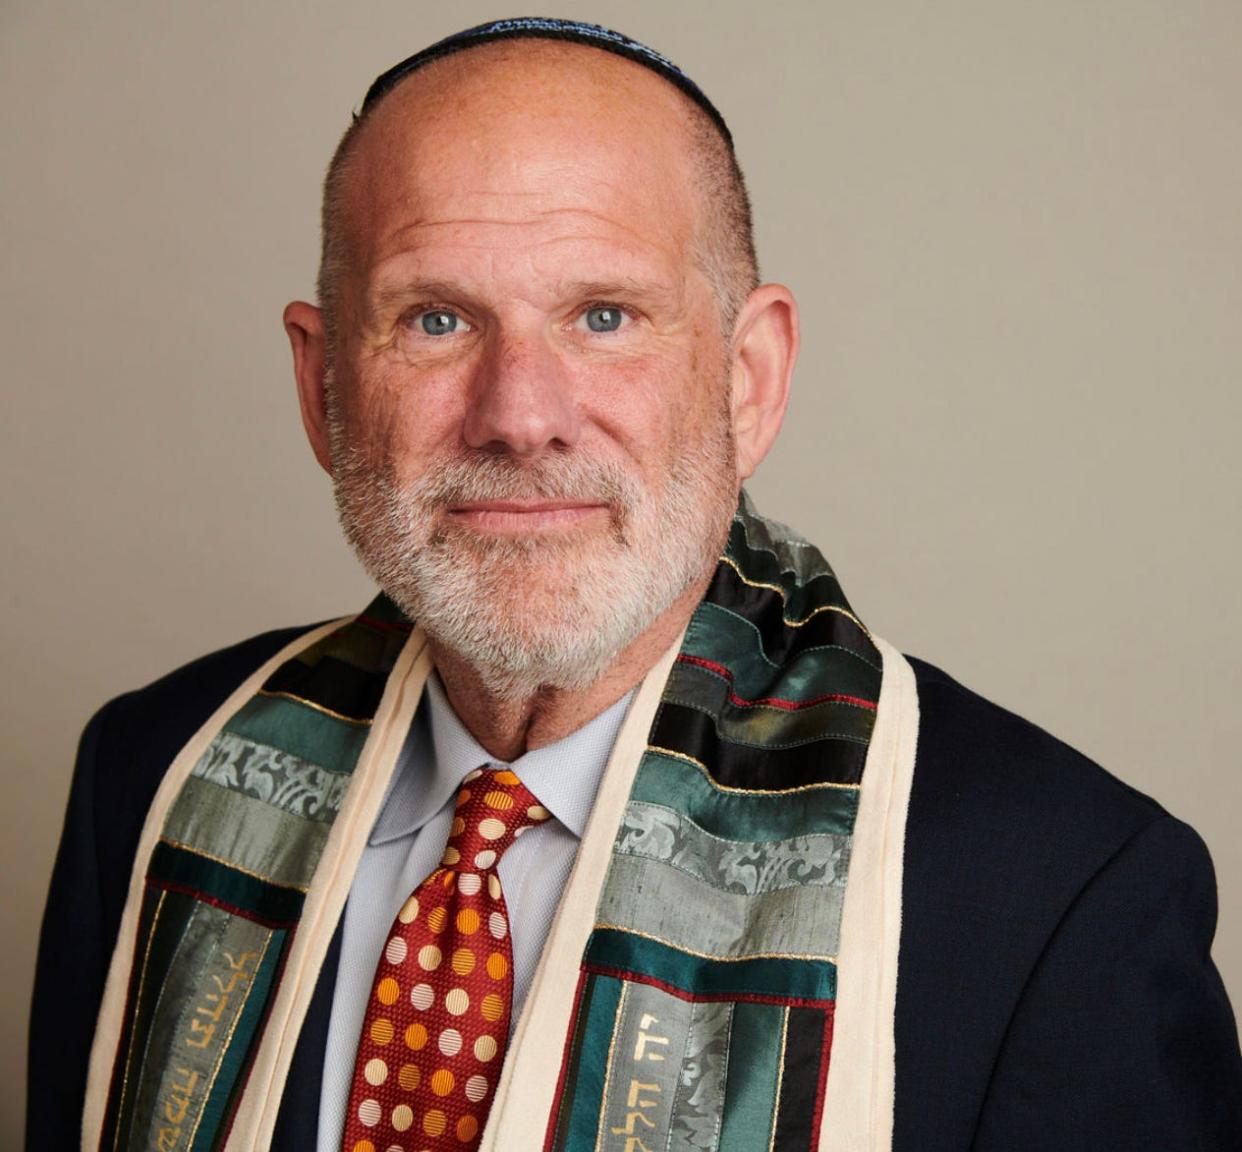 Cantor Chayim Frenkel of Kehillat Israel in Los Angeles.